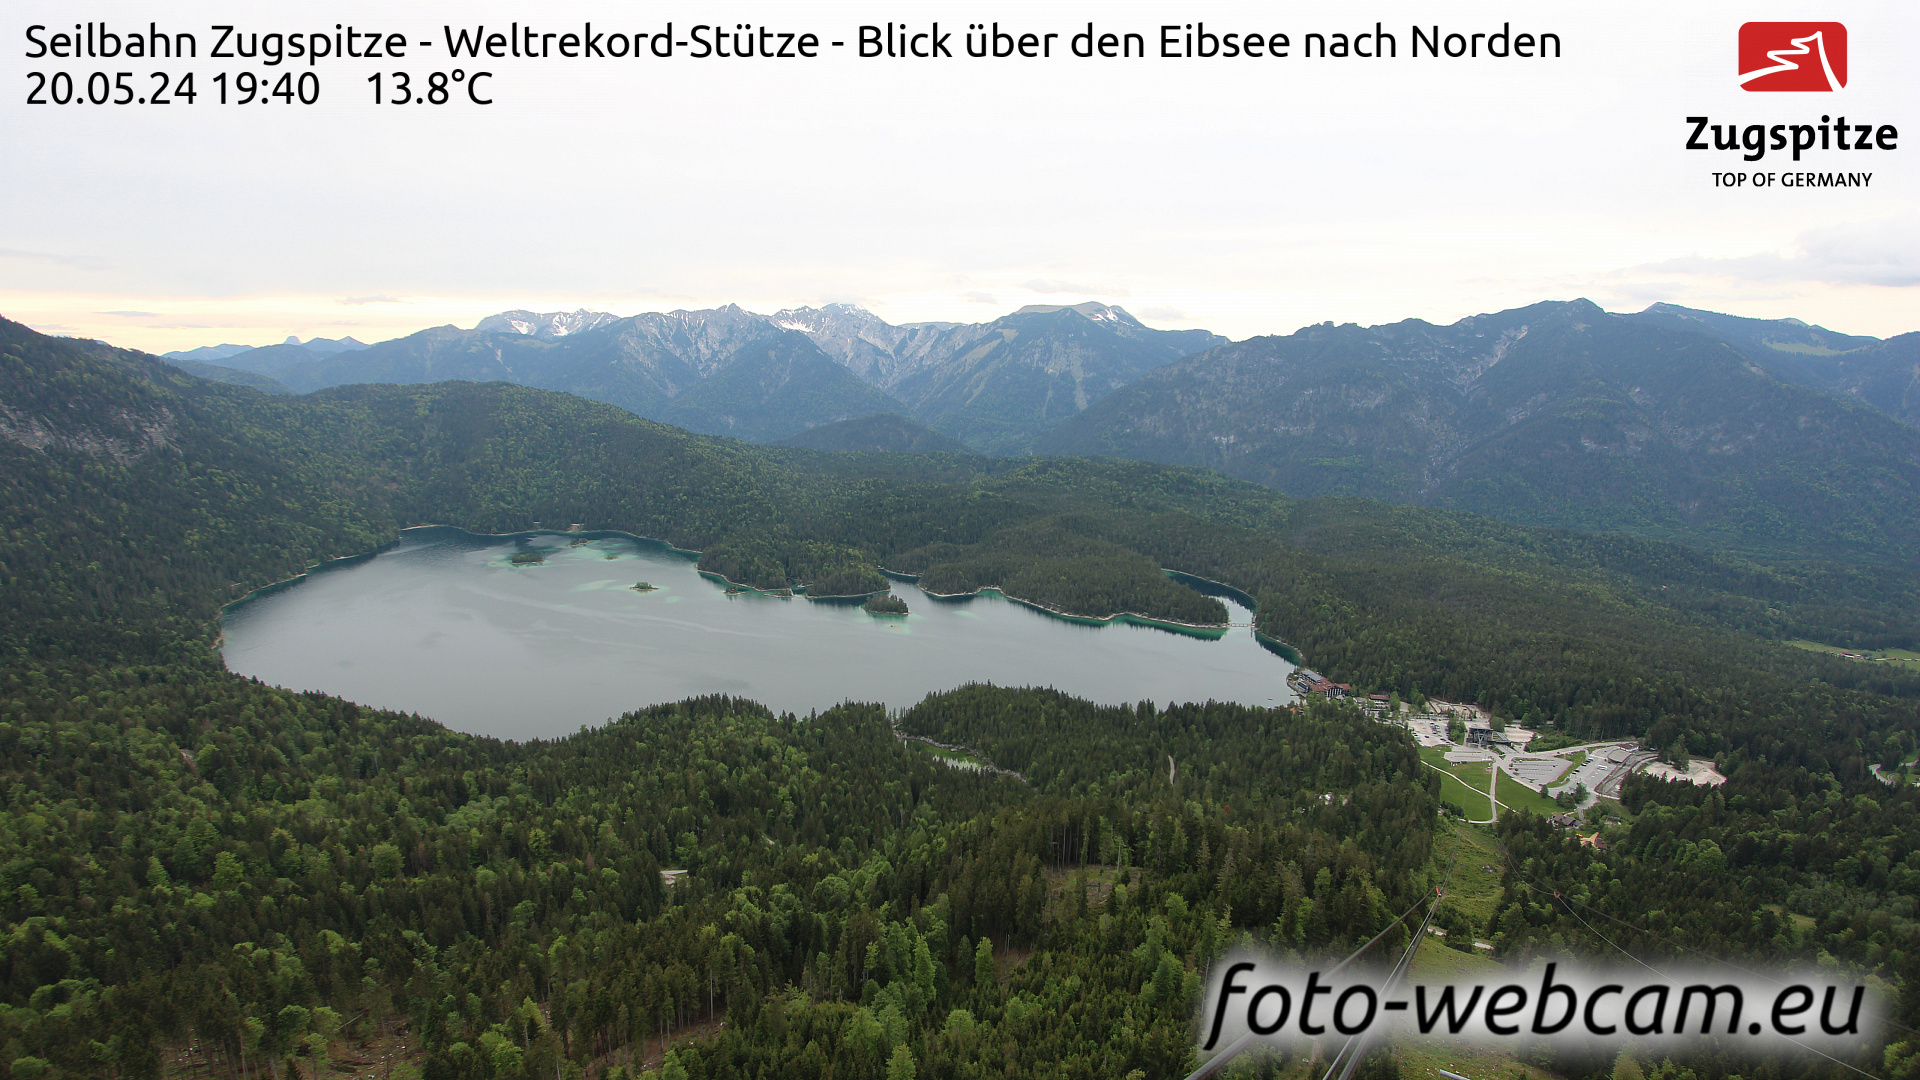 Zugspitze Wed. 19:49